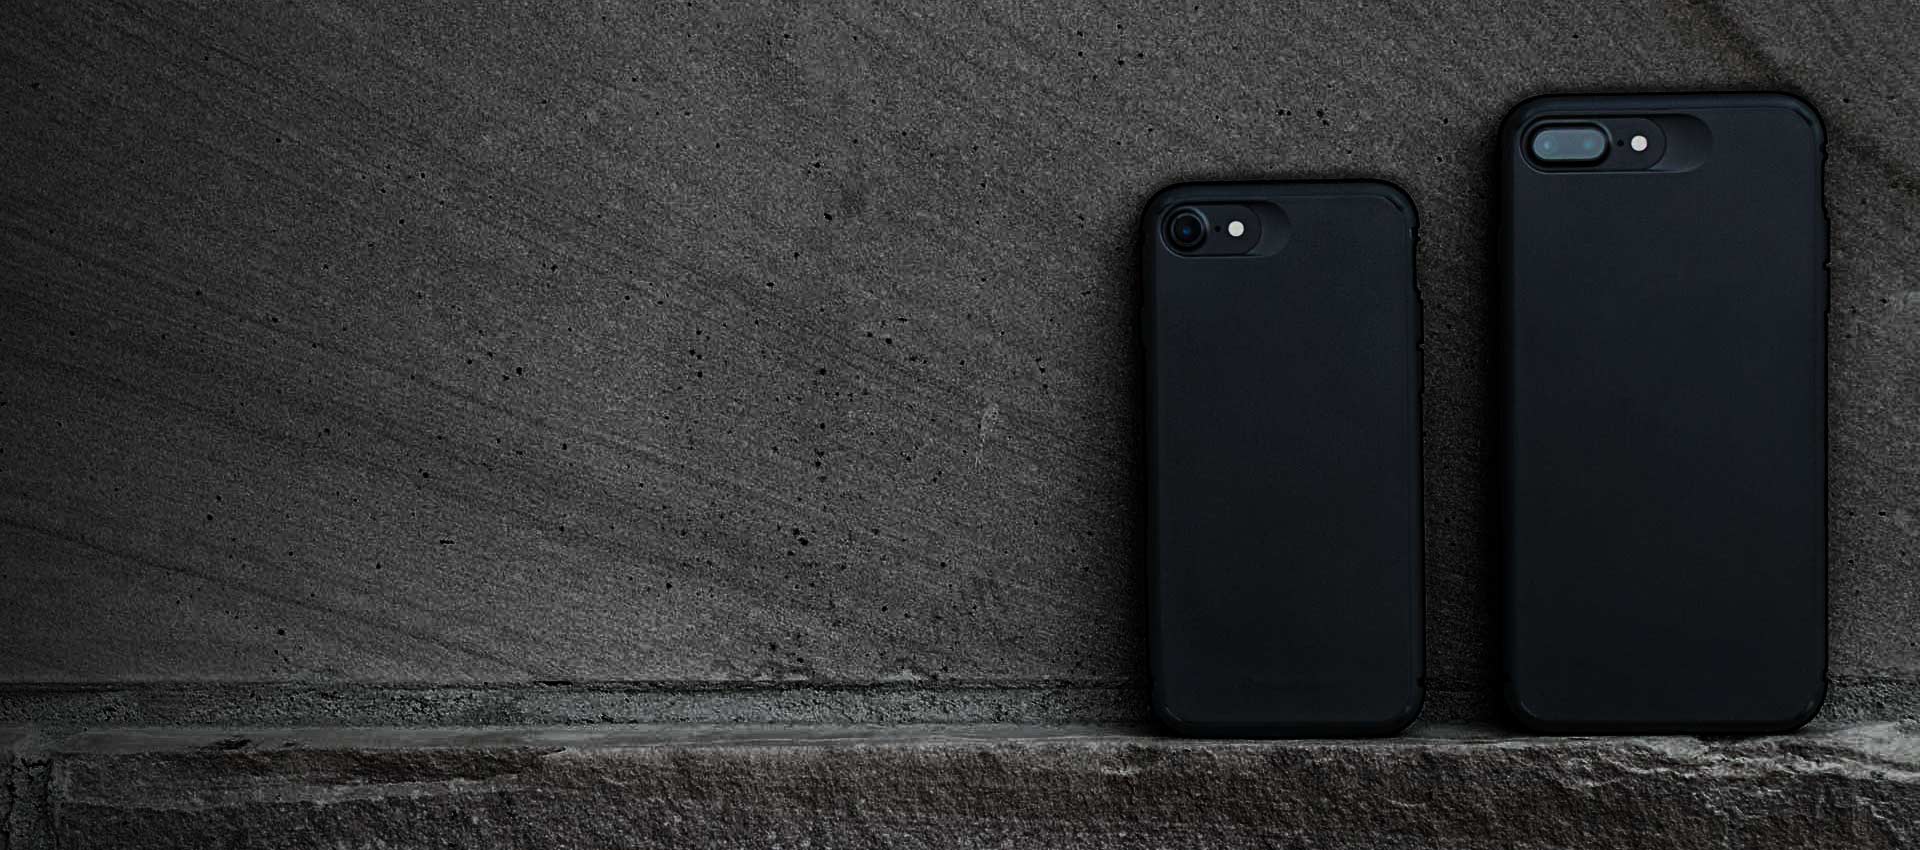 Apple iPhone 8 Plus/7 Plus Silicone Case Black